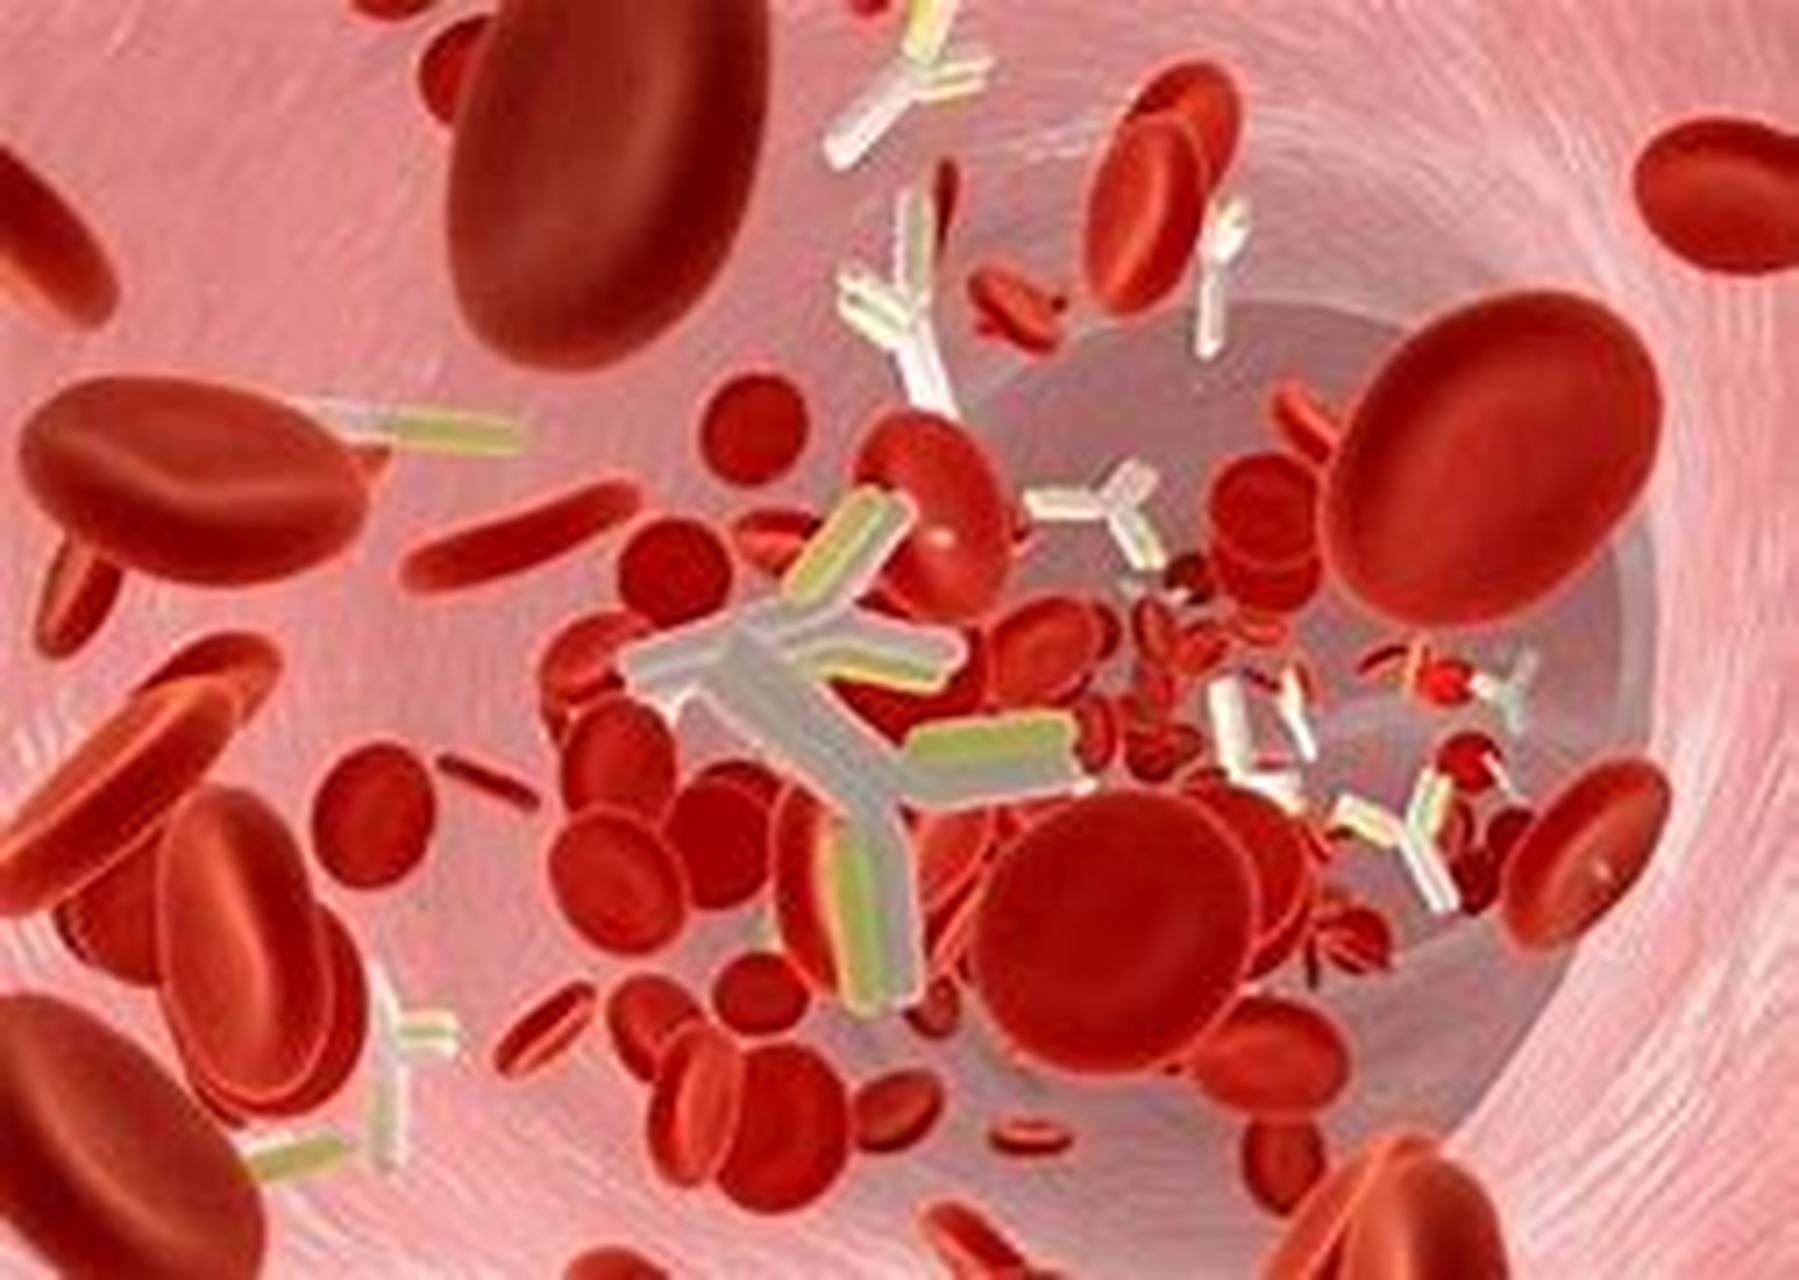 在来月经的时候内膜脱落出血,再凝结经阴道被氧化为暗红色